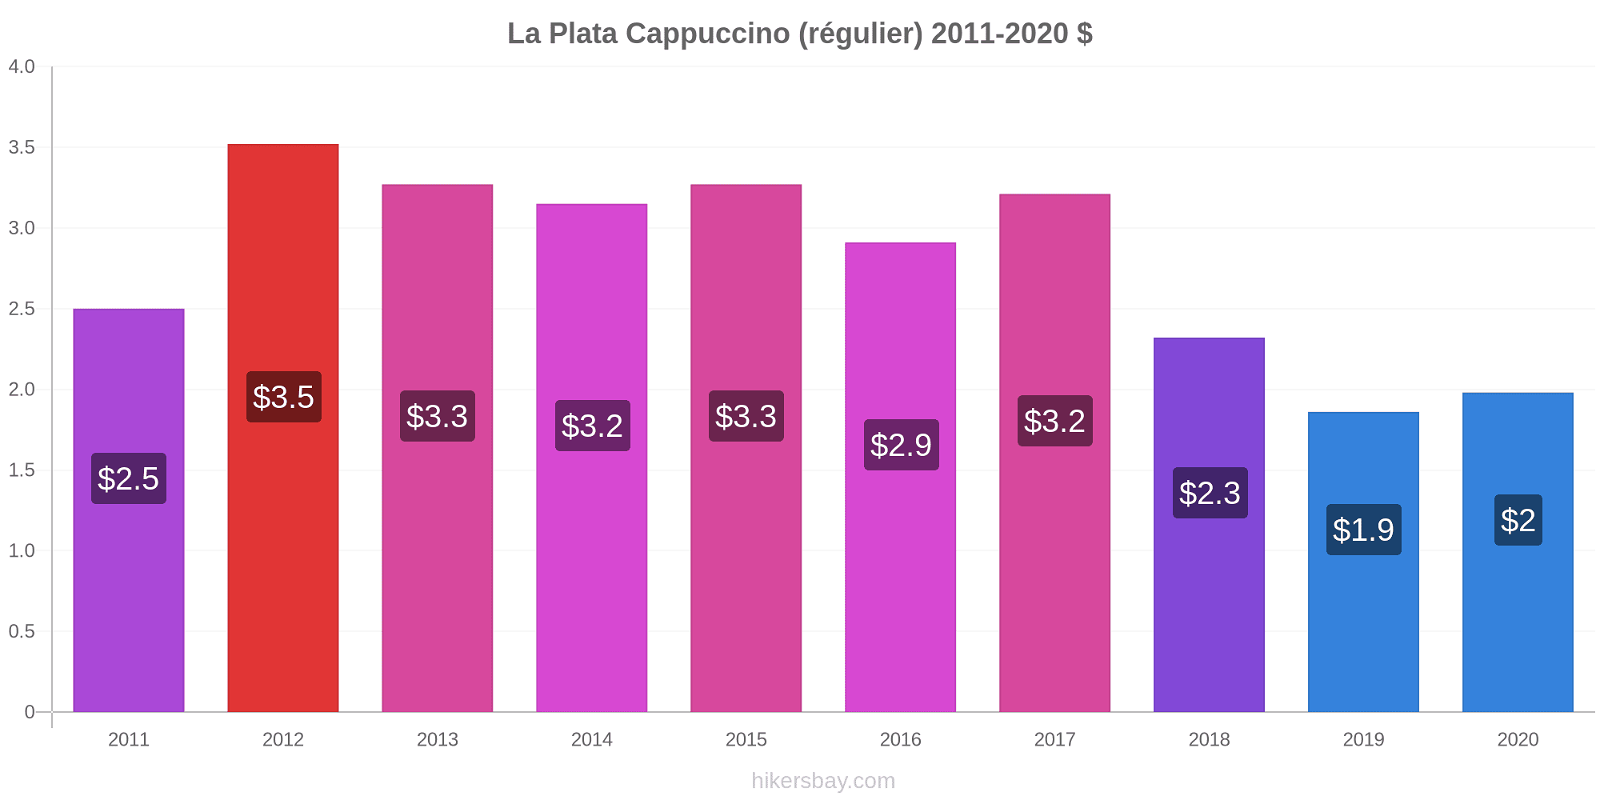 La Plata changements de prix Cappuccino (régulier) hikersbay.com